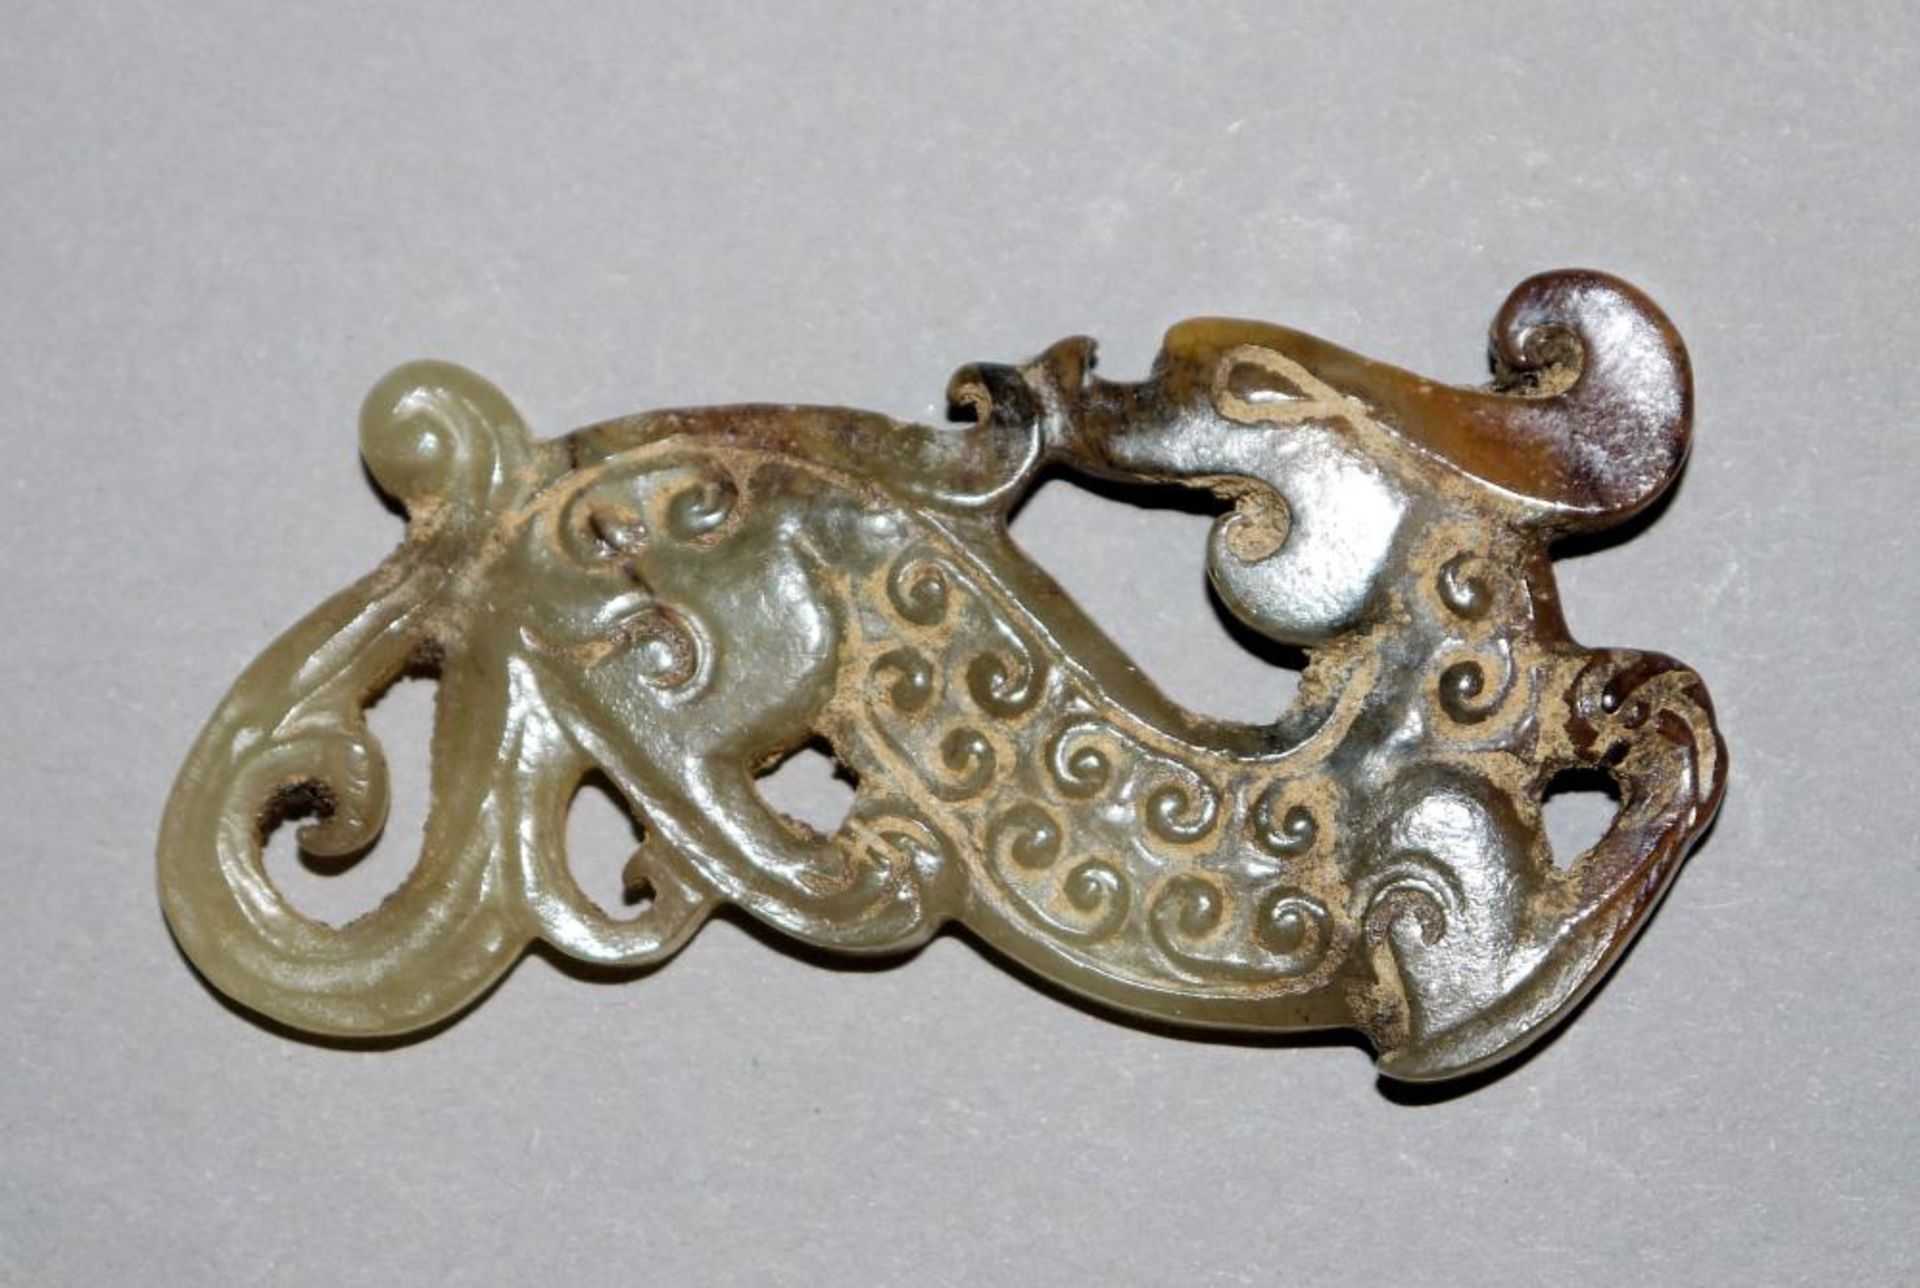 Drachen und Bi-Scheibe aus Jade, wohl Zeit der Streitenden Reiche, China 5. – 3. Jh. v. Chr. Drachen - Image 3 of 4